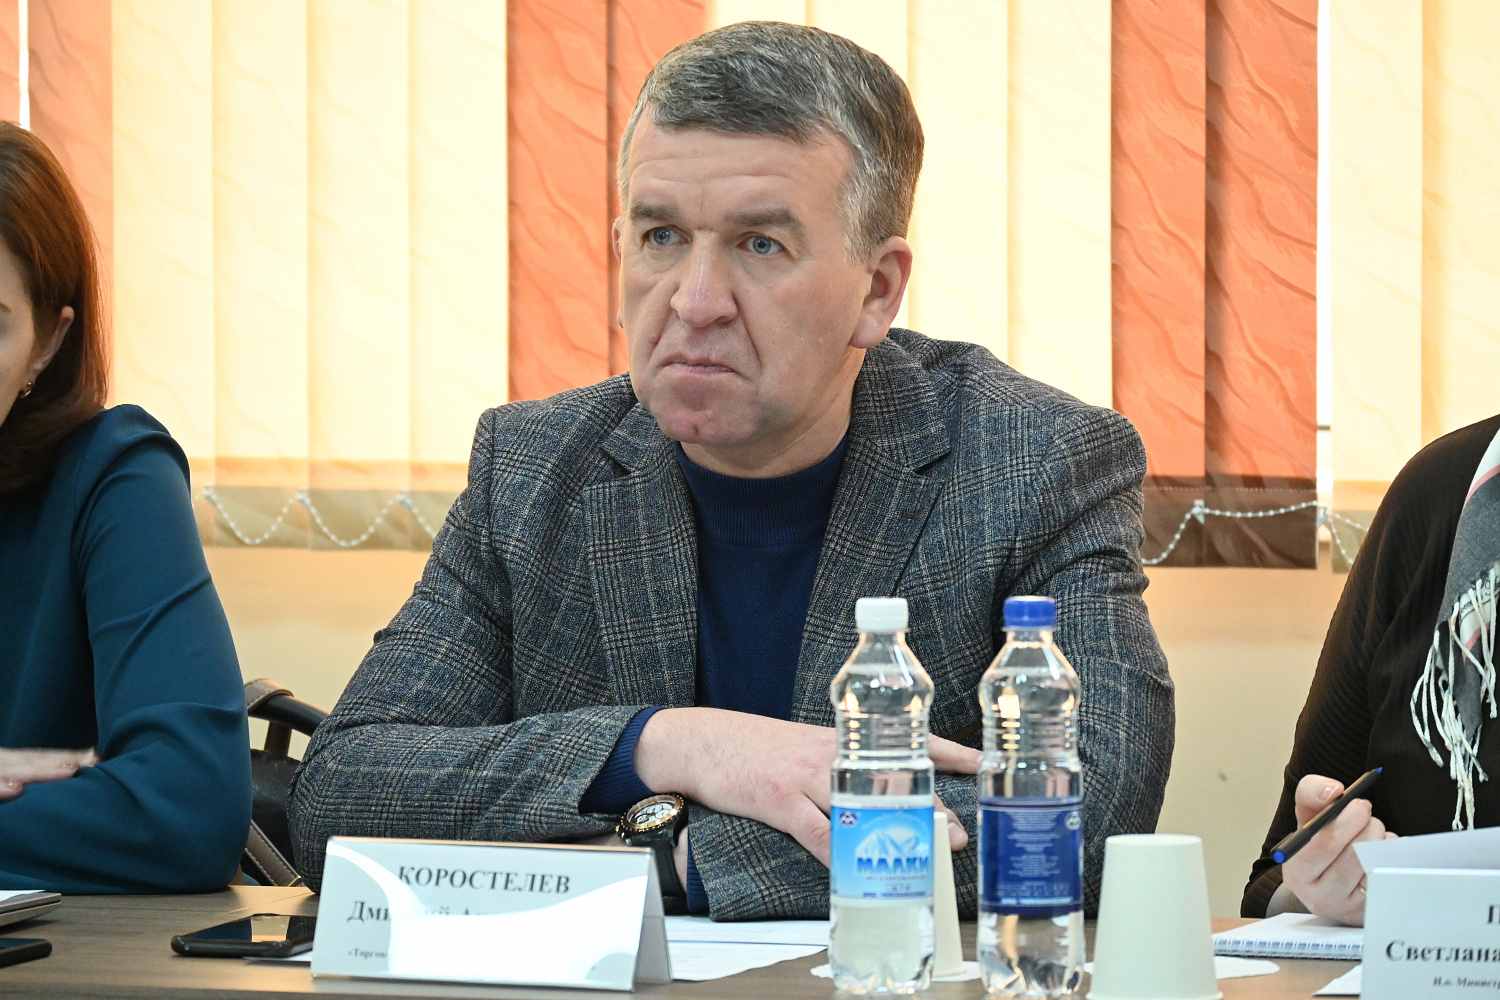 Итоги внедрения Экспортного стандарта 2.0 в Камчатском крае обсудили на заседании рабочей группы по направлению "Экспорт"